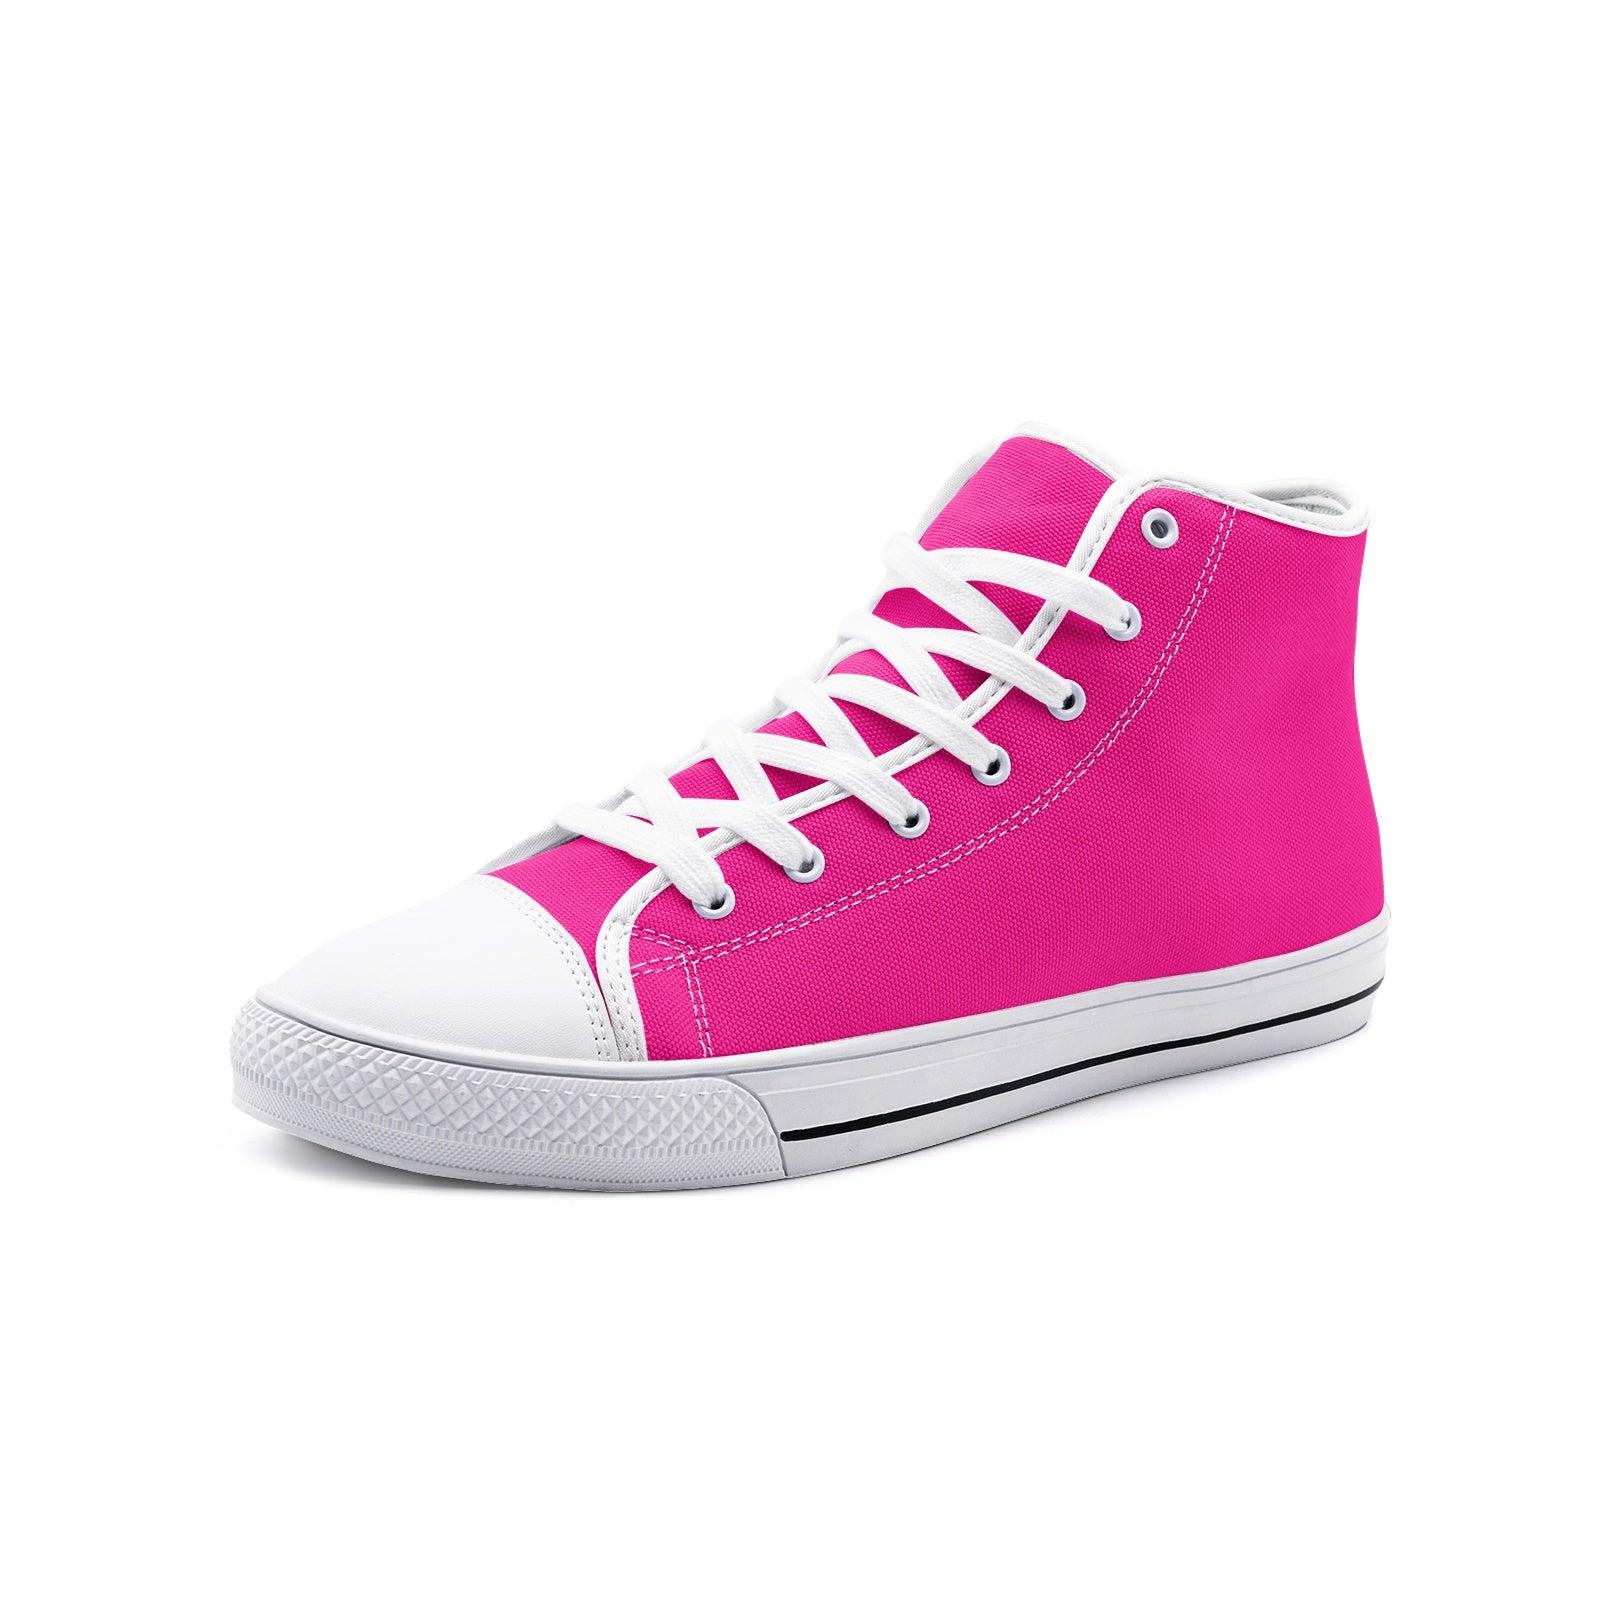 Pinky Unisex High-Top Canvas Shoes DromedarShop.com Online Boutique